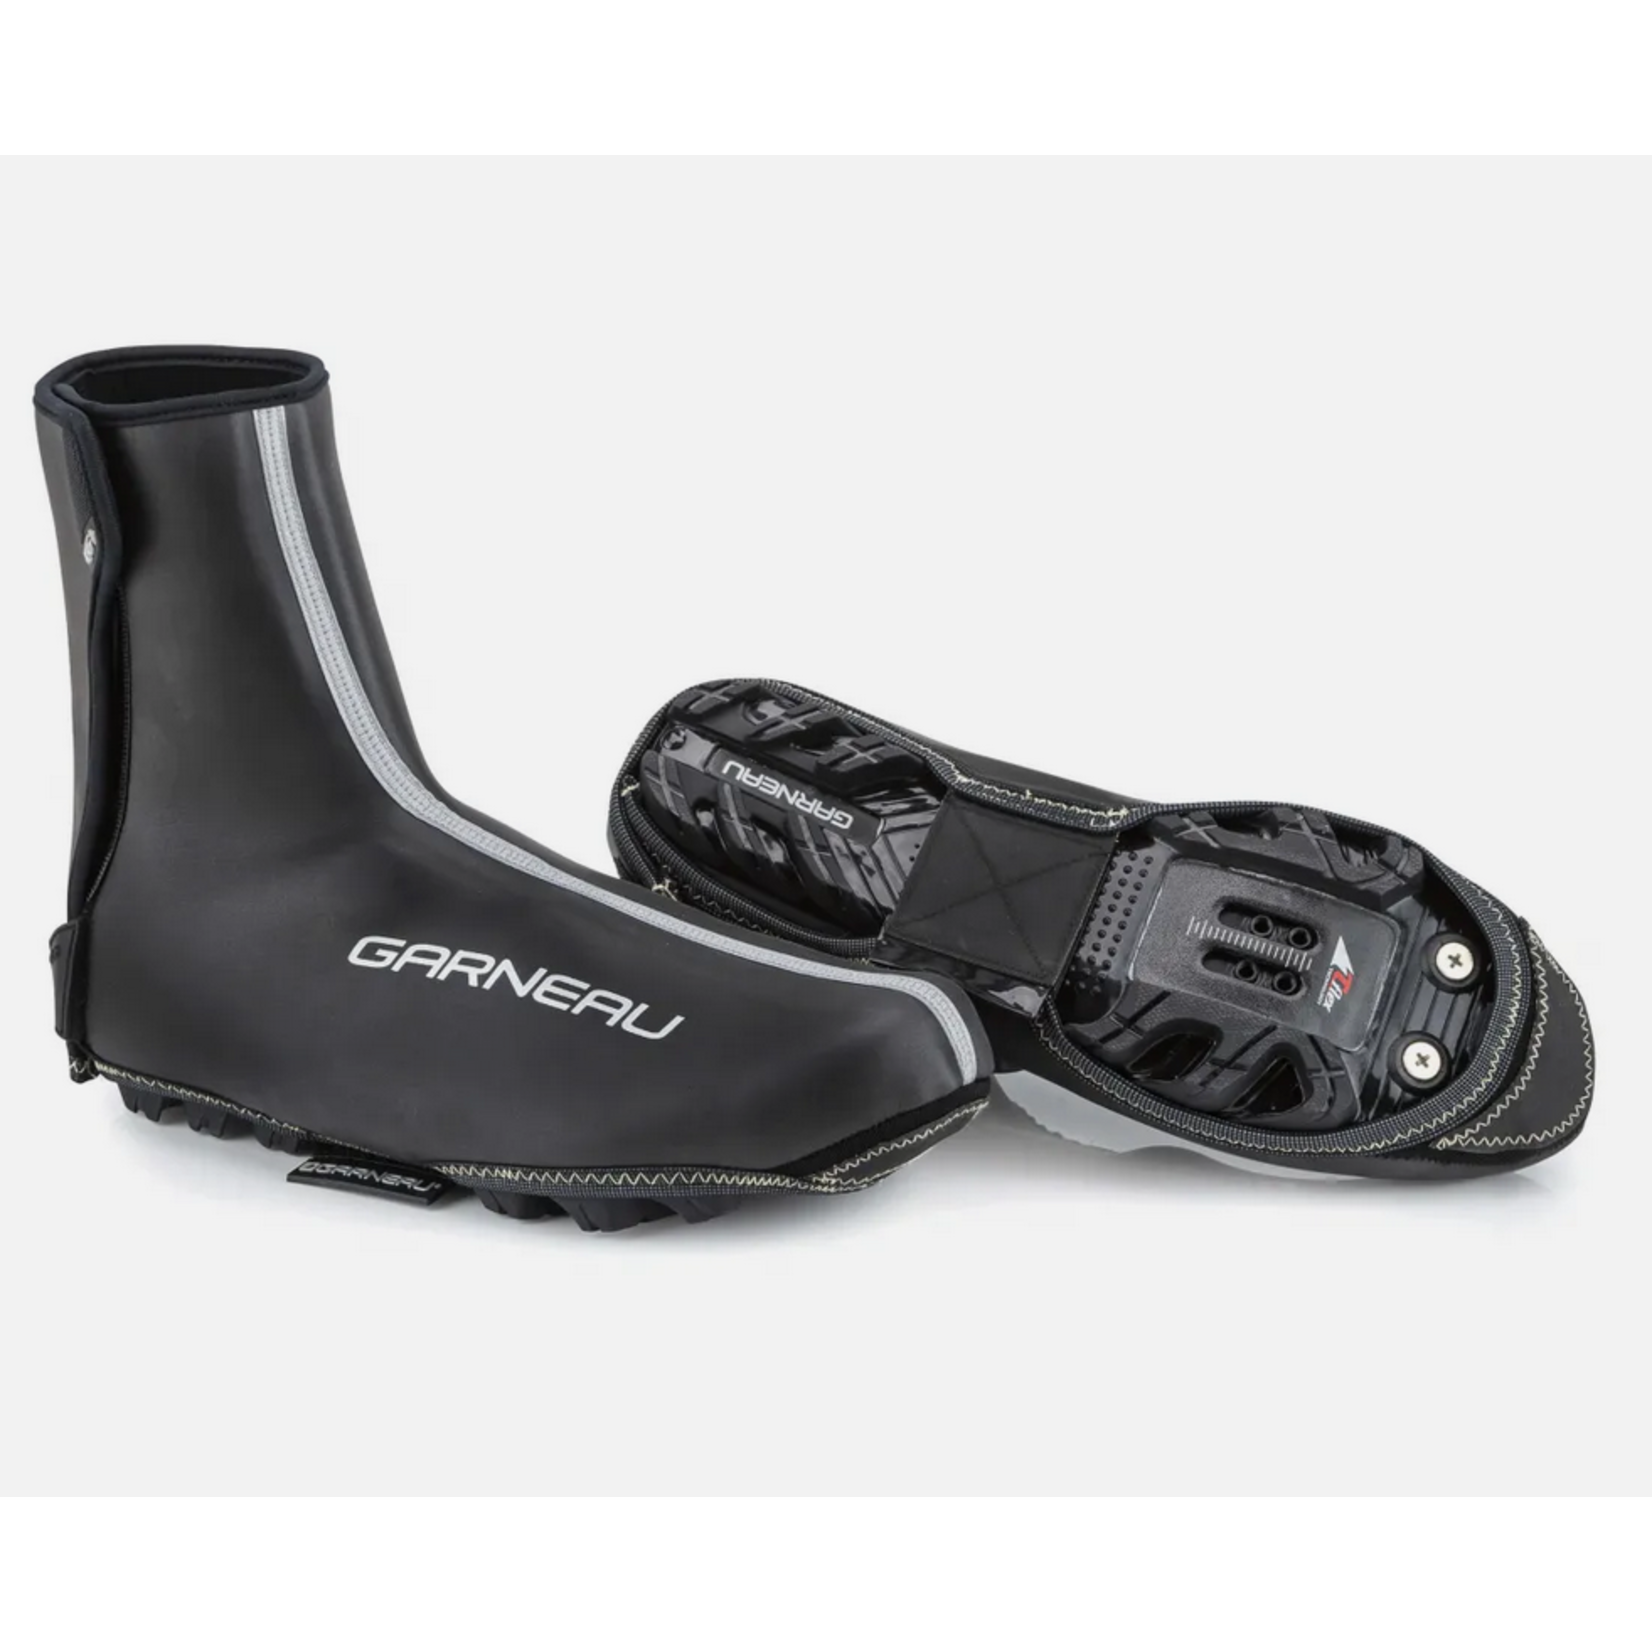 GARNEAU Thermax II Cycling Shoe Covers